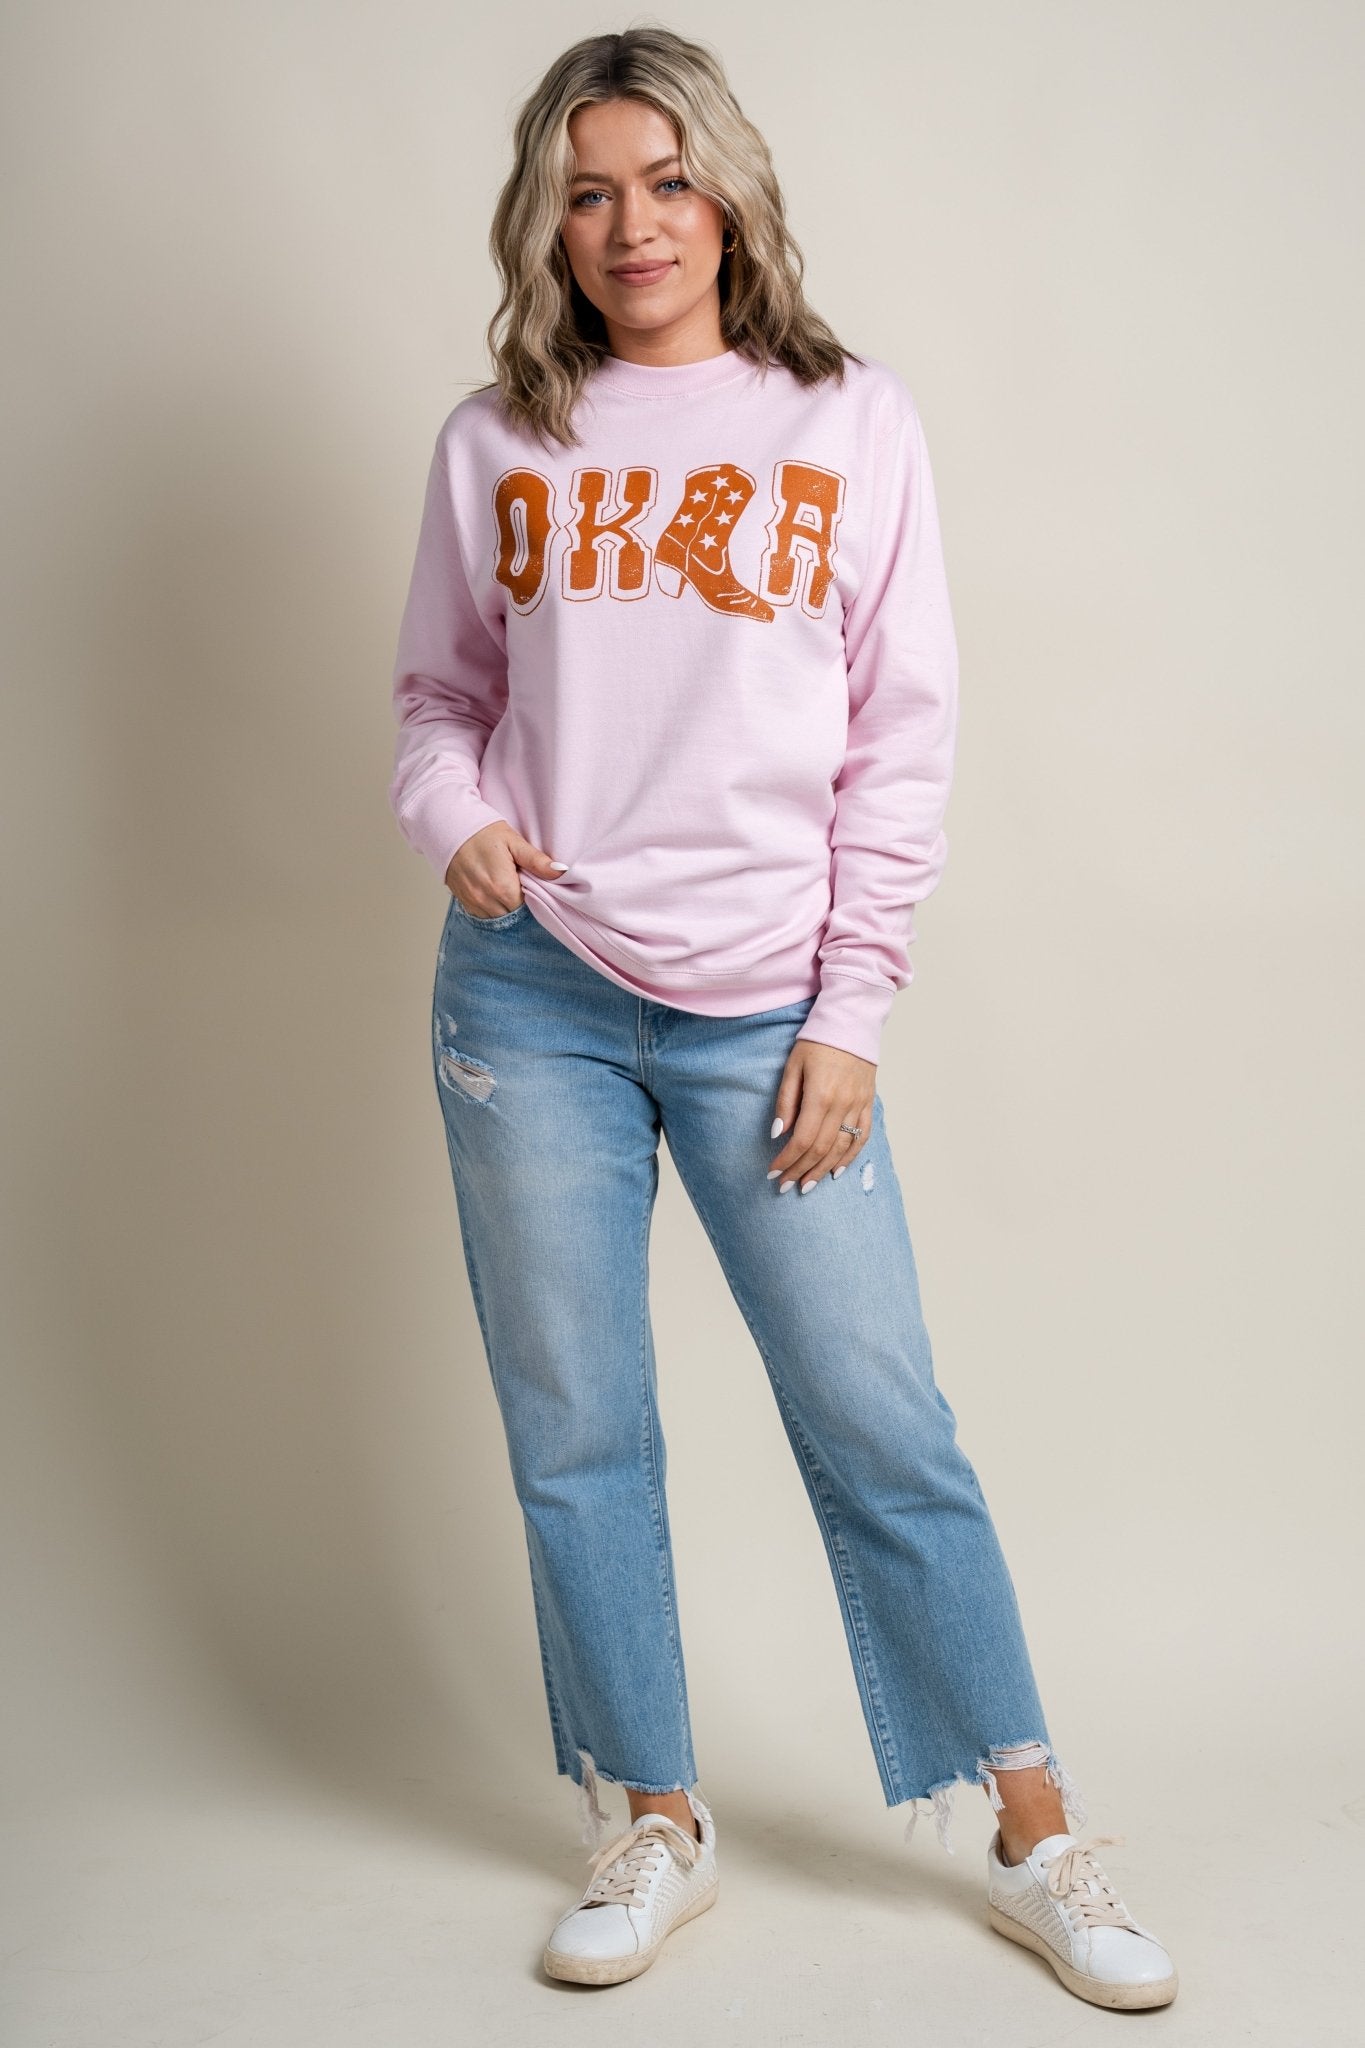 OKLA boot sweatshirt pink